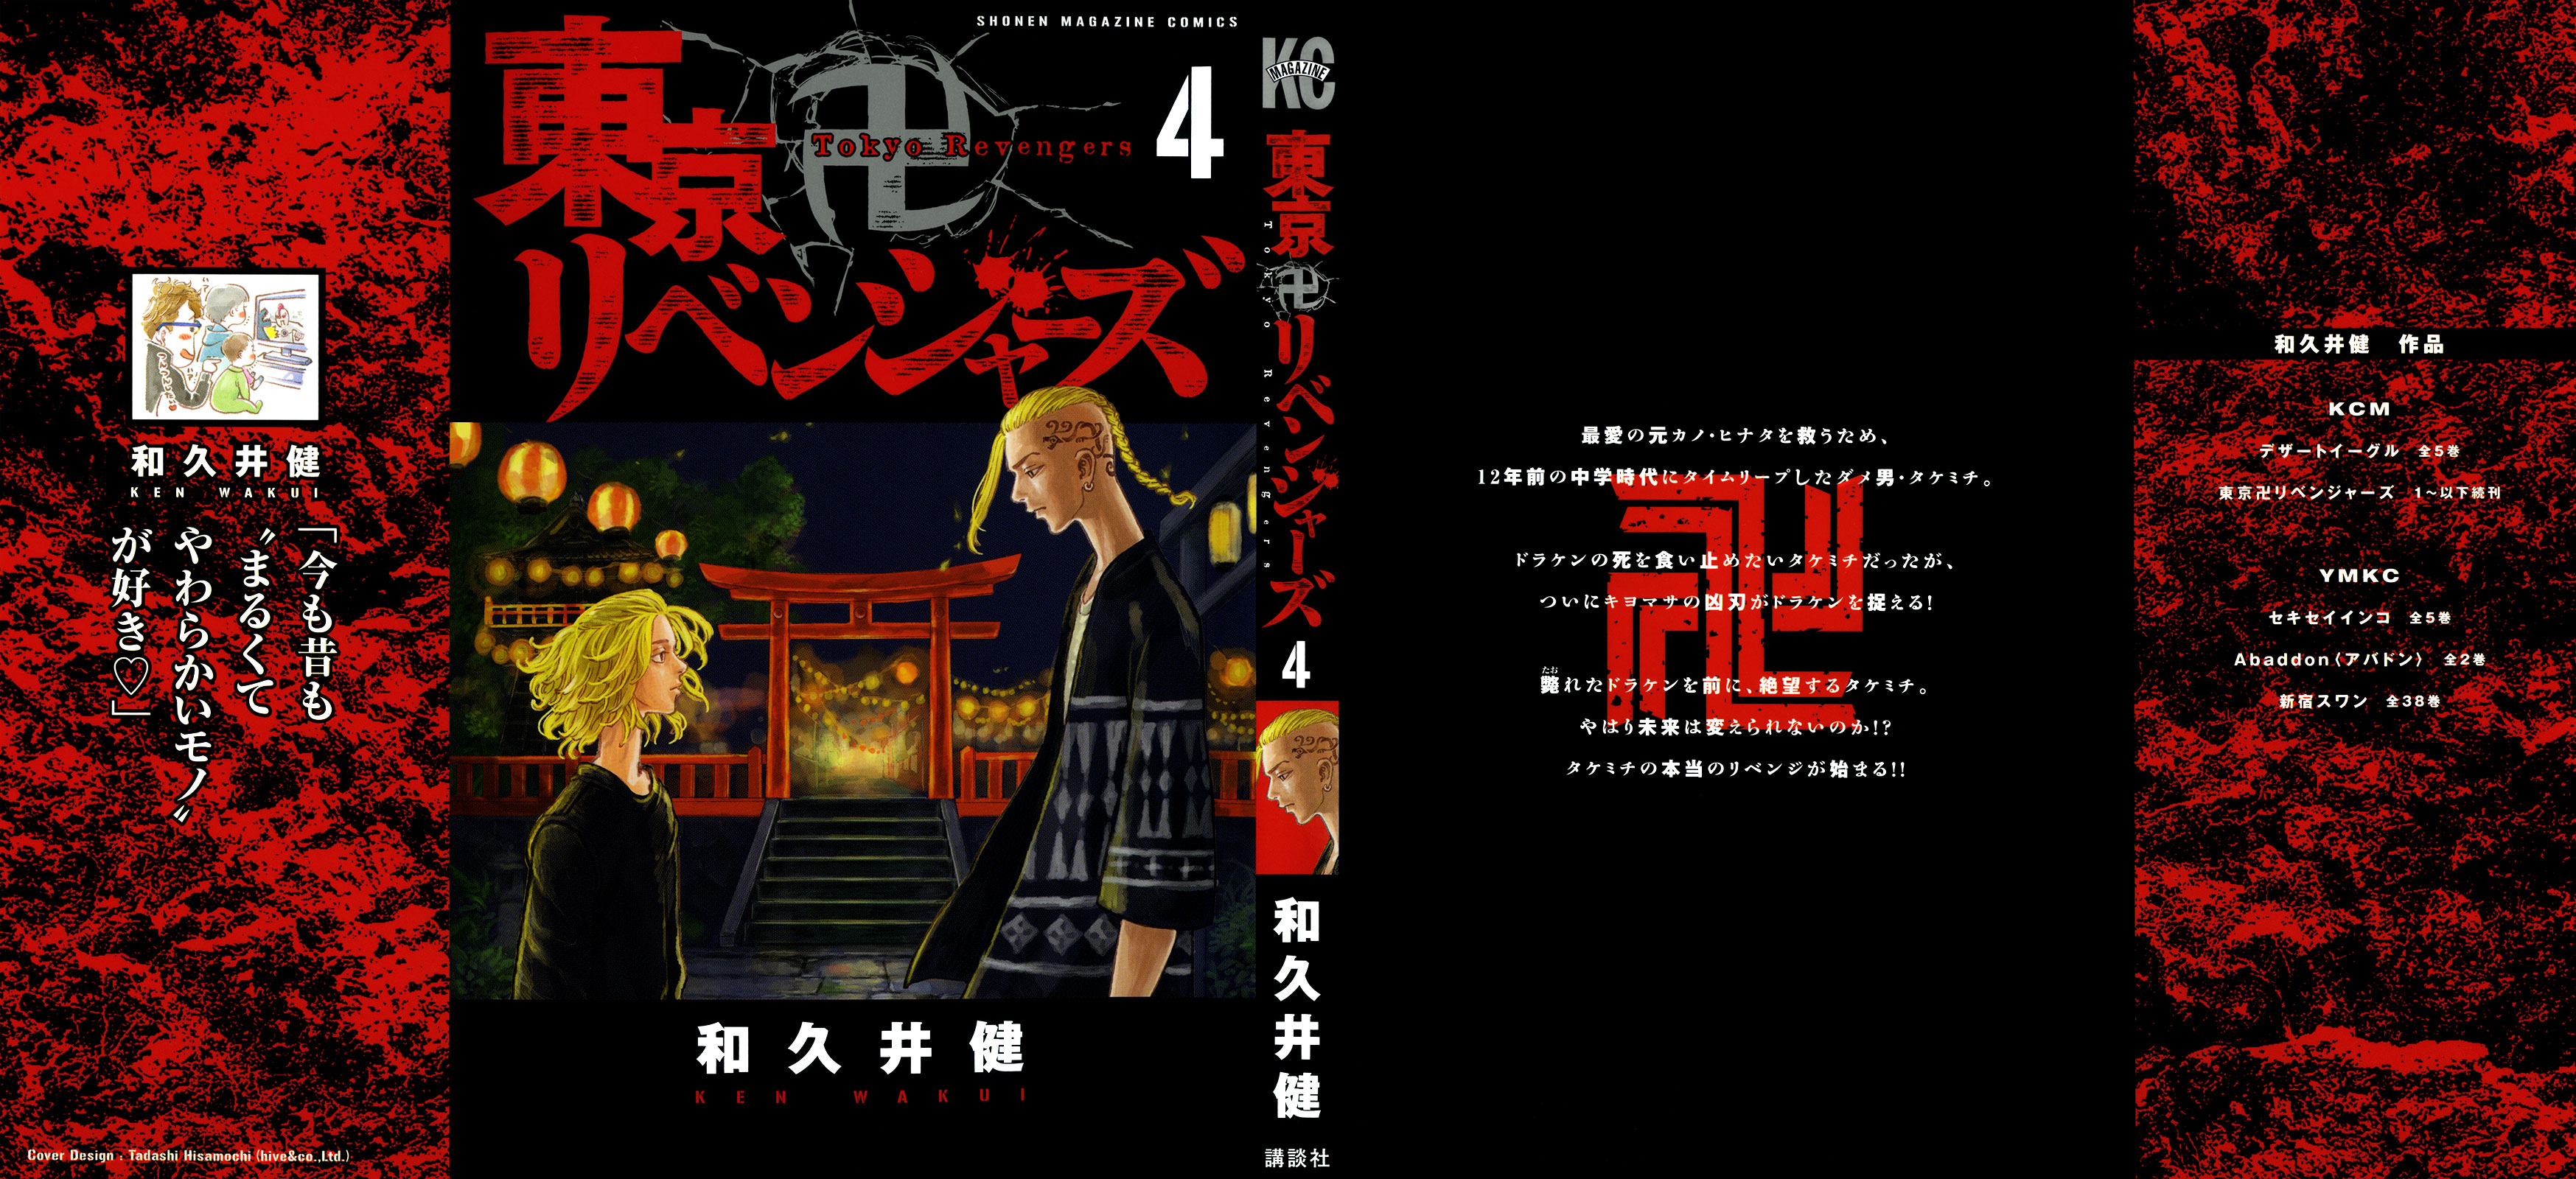 Tokyo Revengers Wallpaper Poster, Tokyo Revengers, Anime